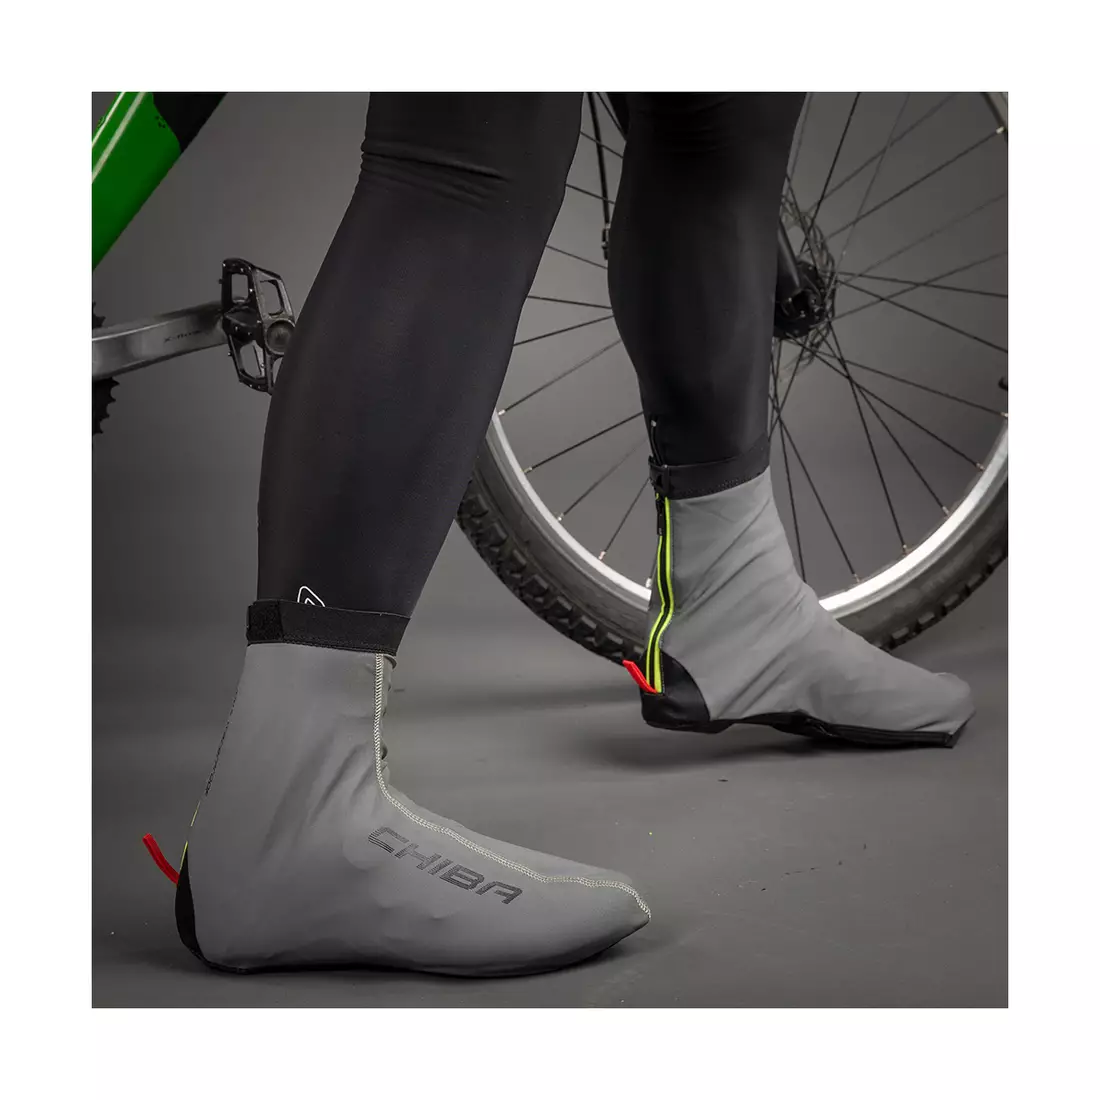 CHIBA REFLEX UBERSCHUH chrániče proti dažďu pre cyklistickú obuv, reflexné strieborné 31489 